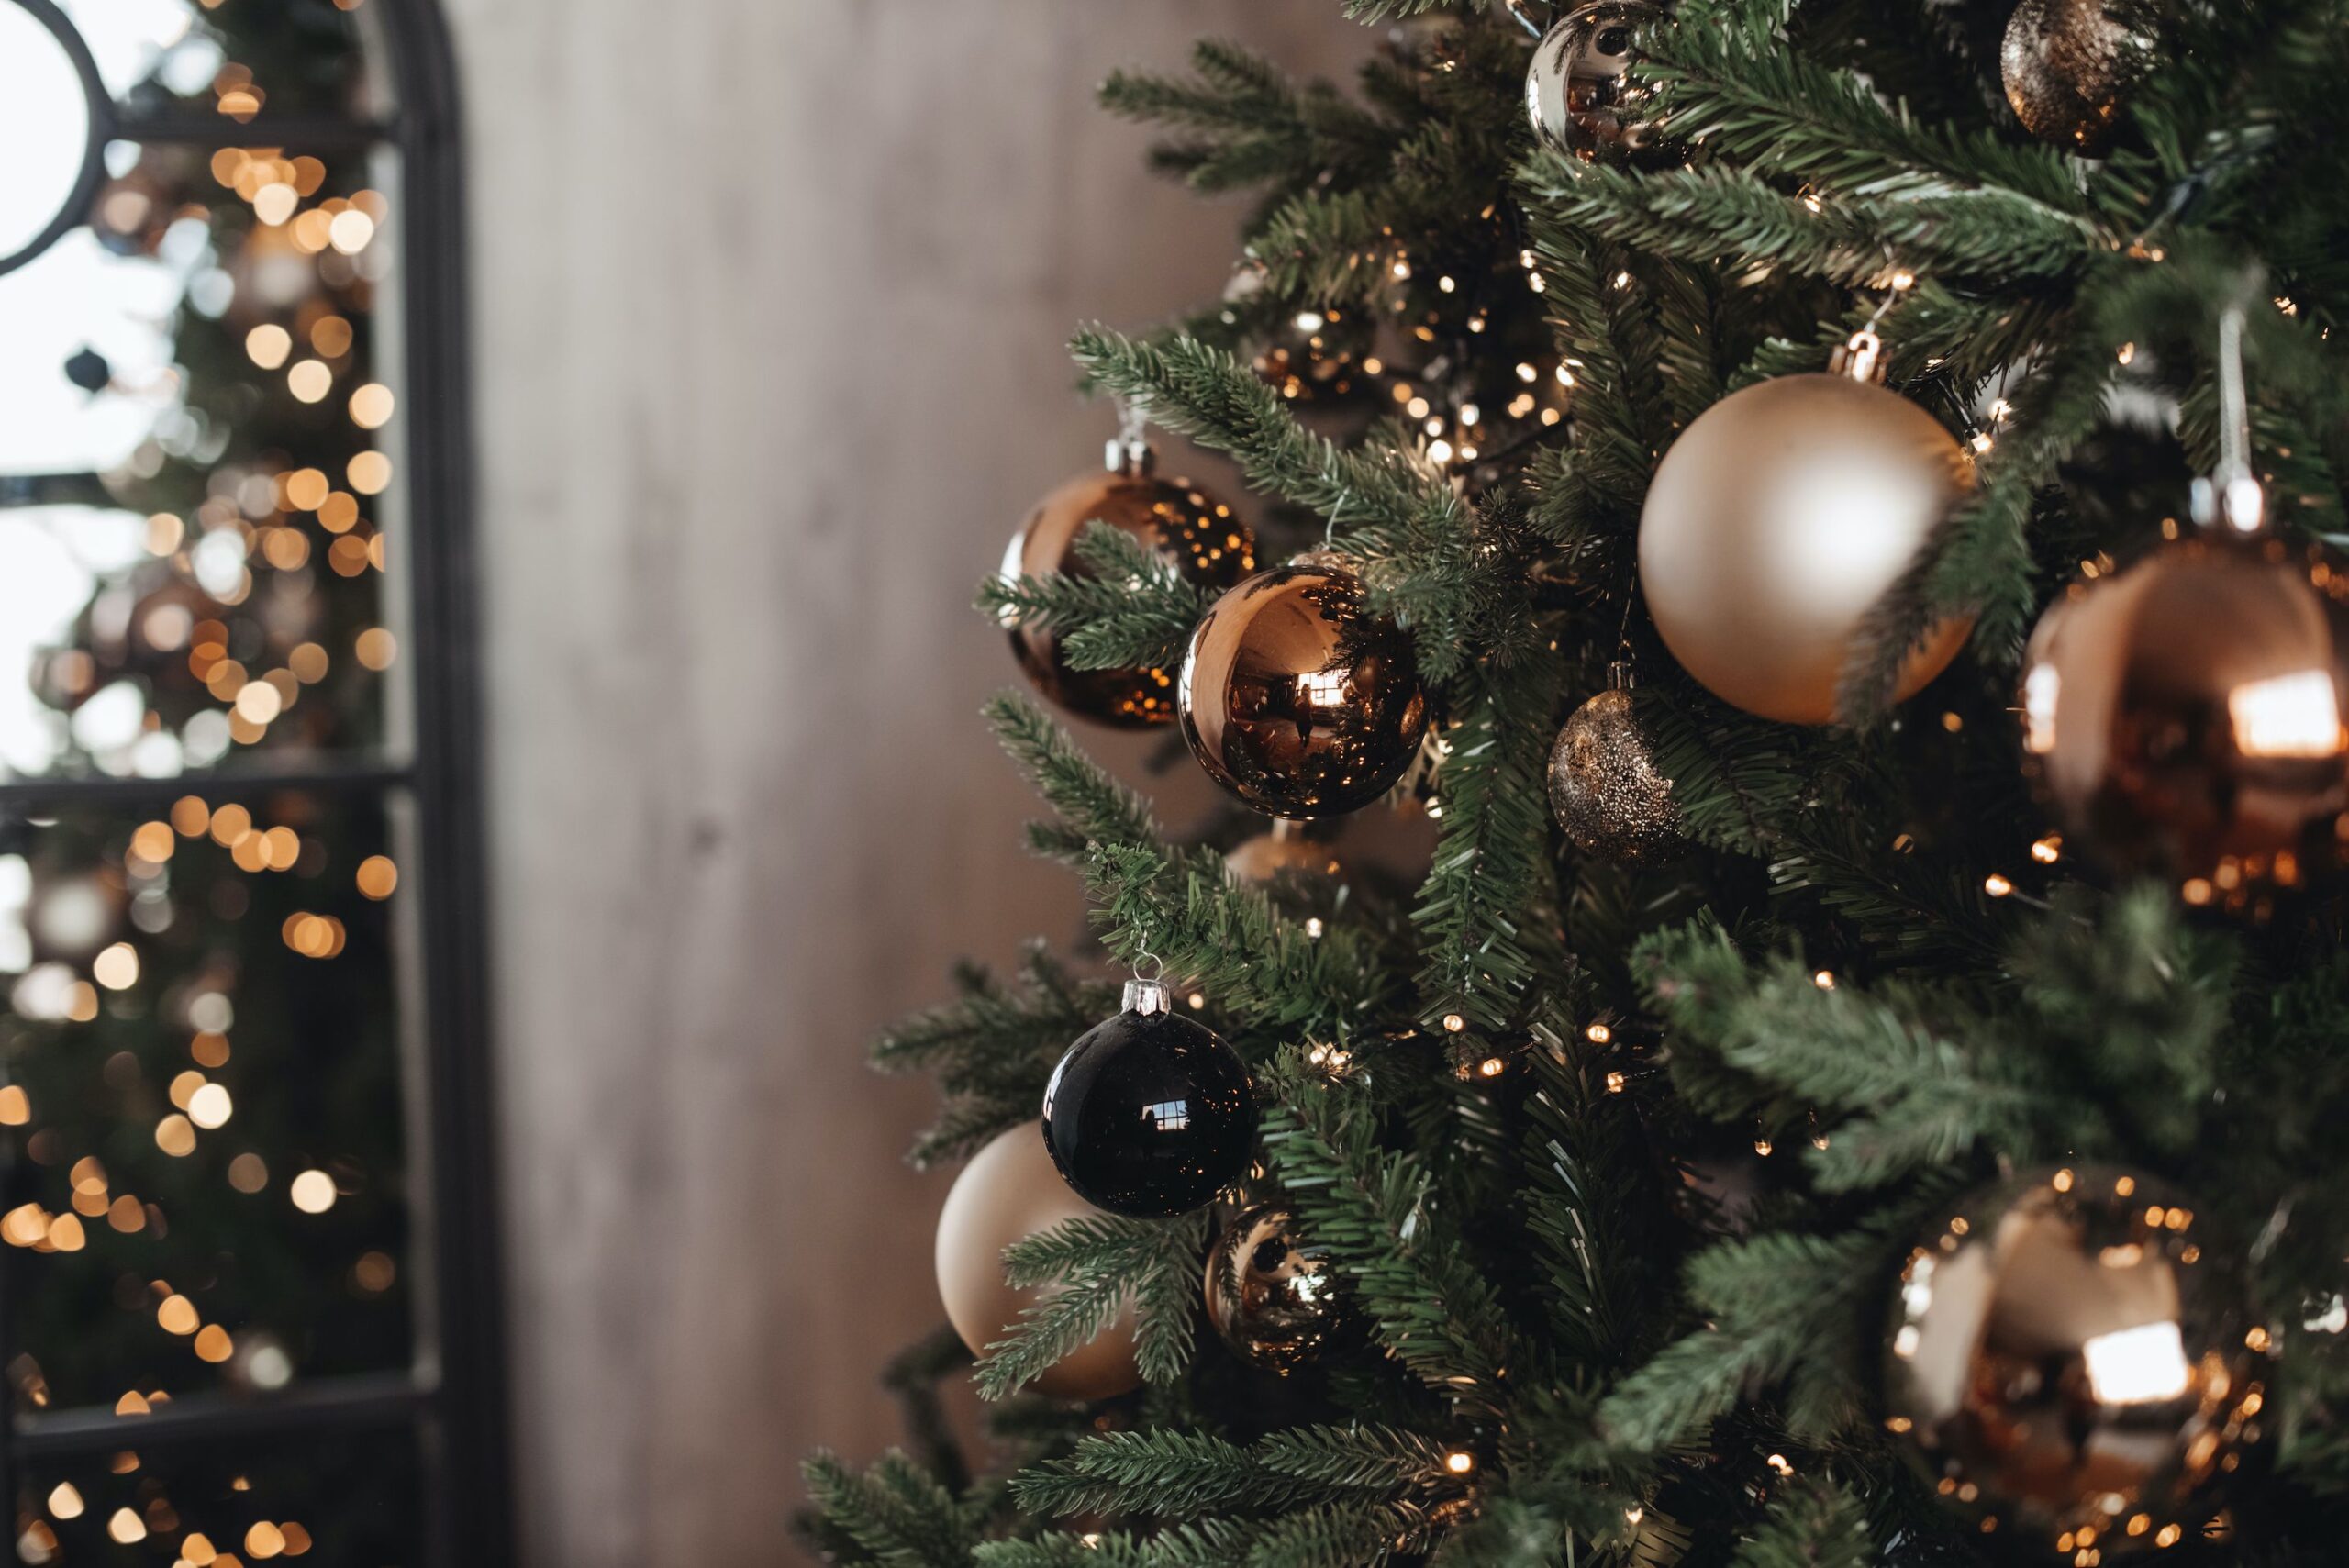 “Aspettando il Natale” e “L’anno che verrà” per le festività natalizie